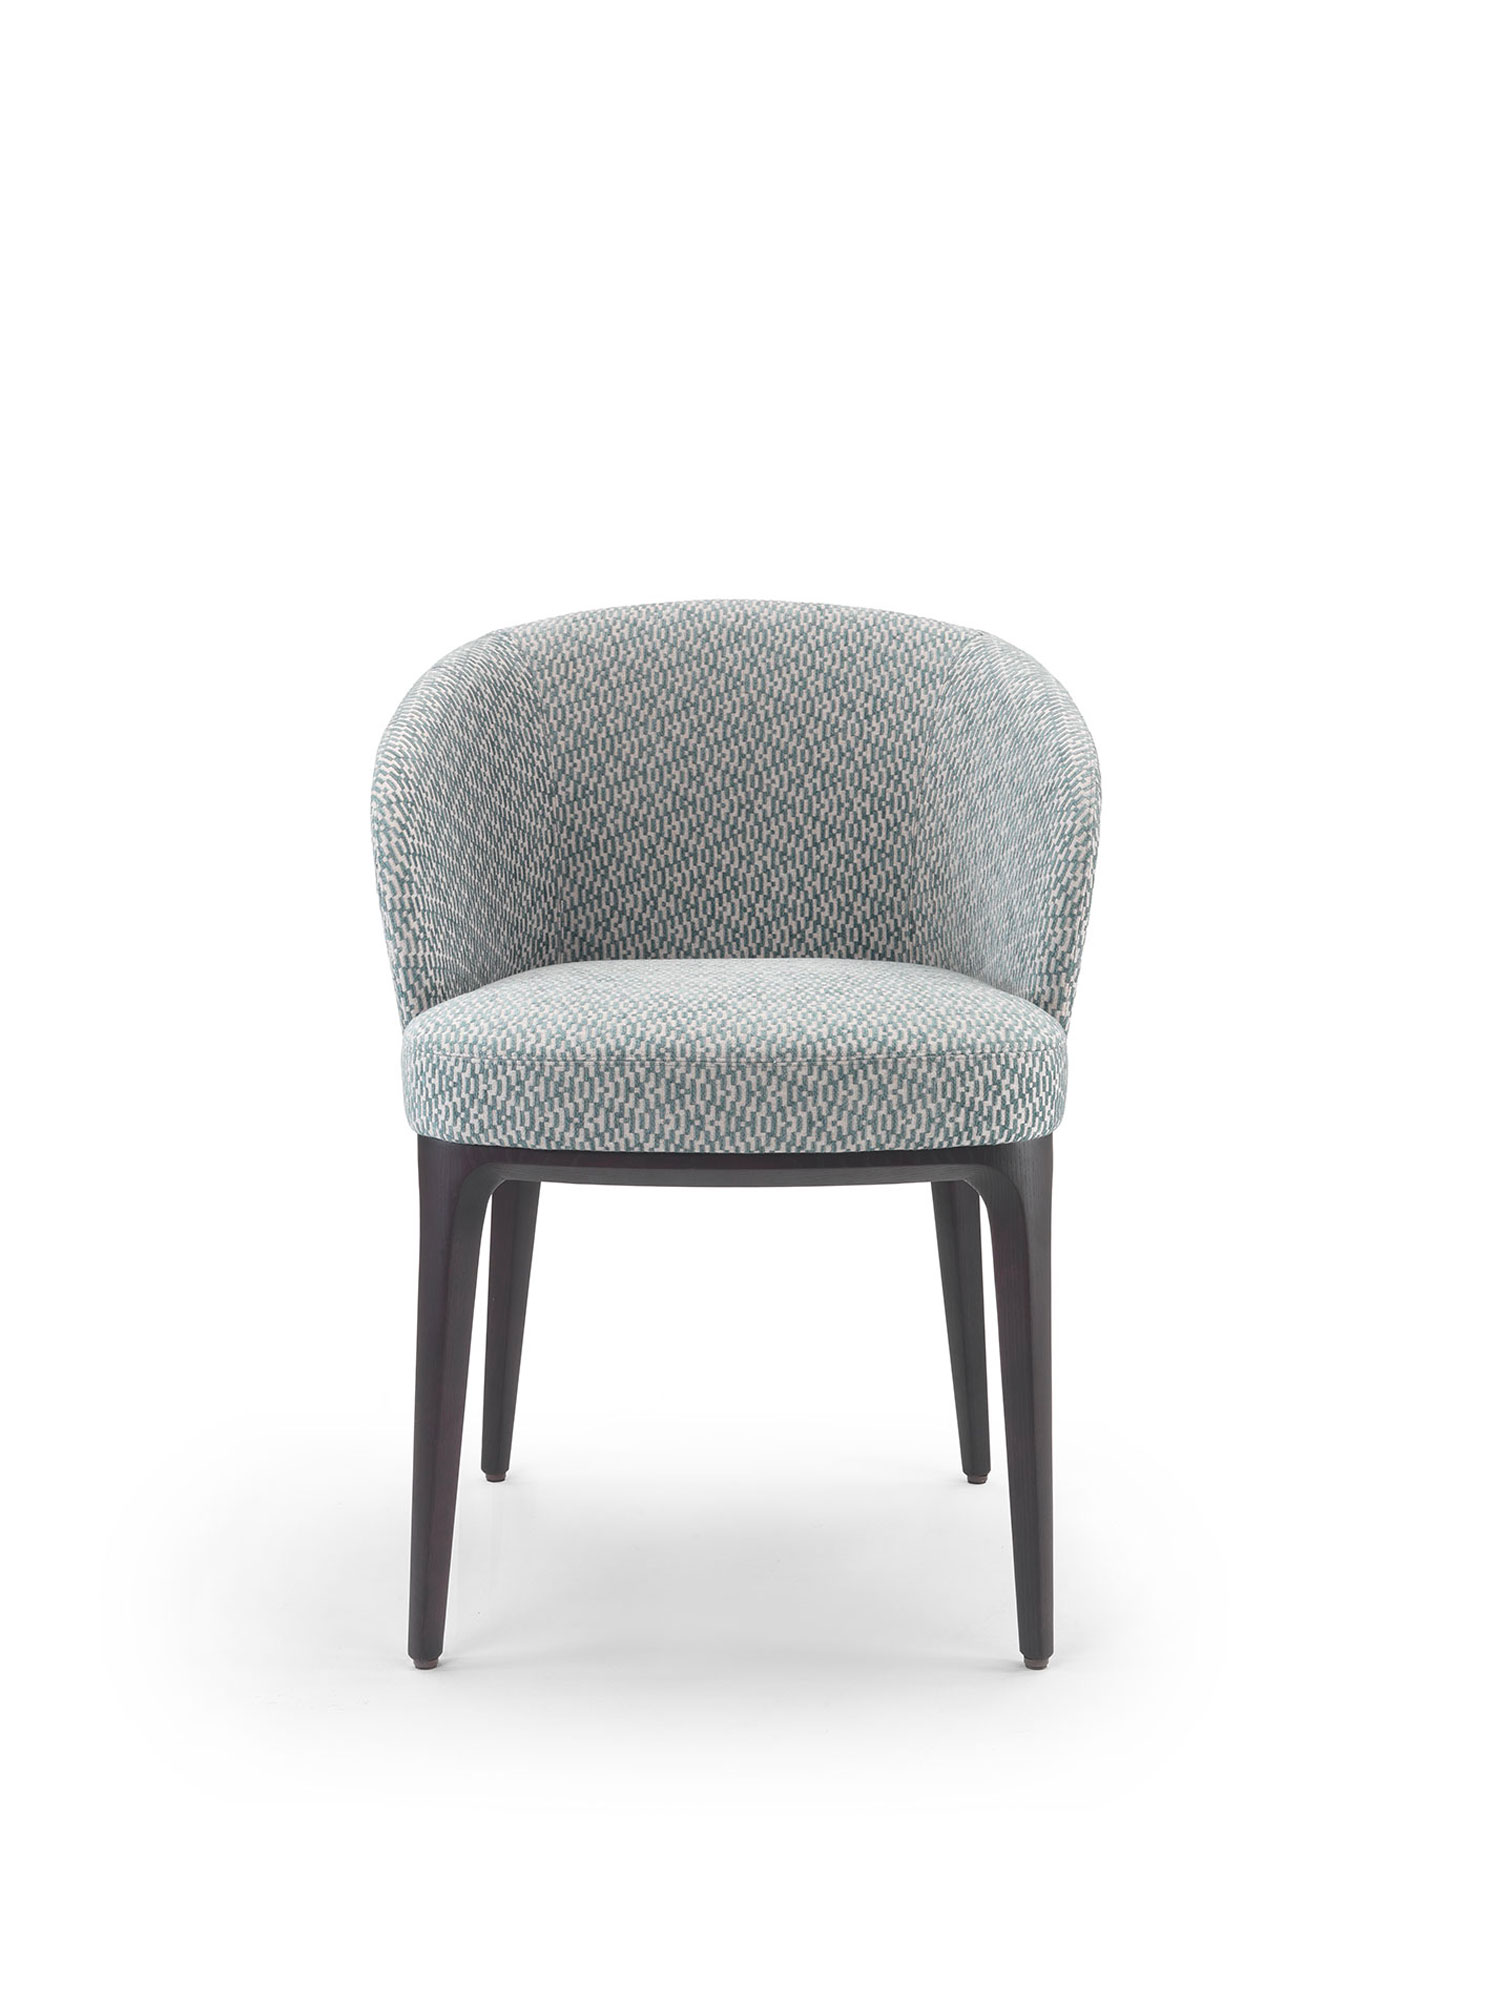 Img068 Paris Fabricr Chair